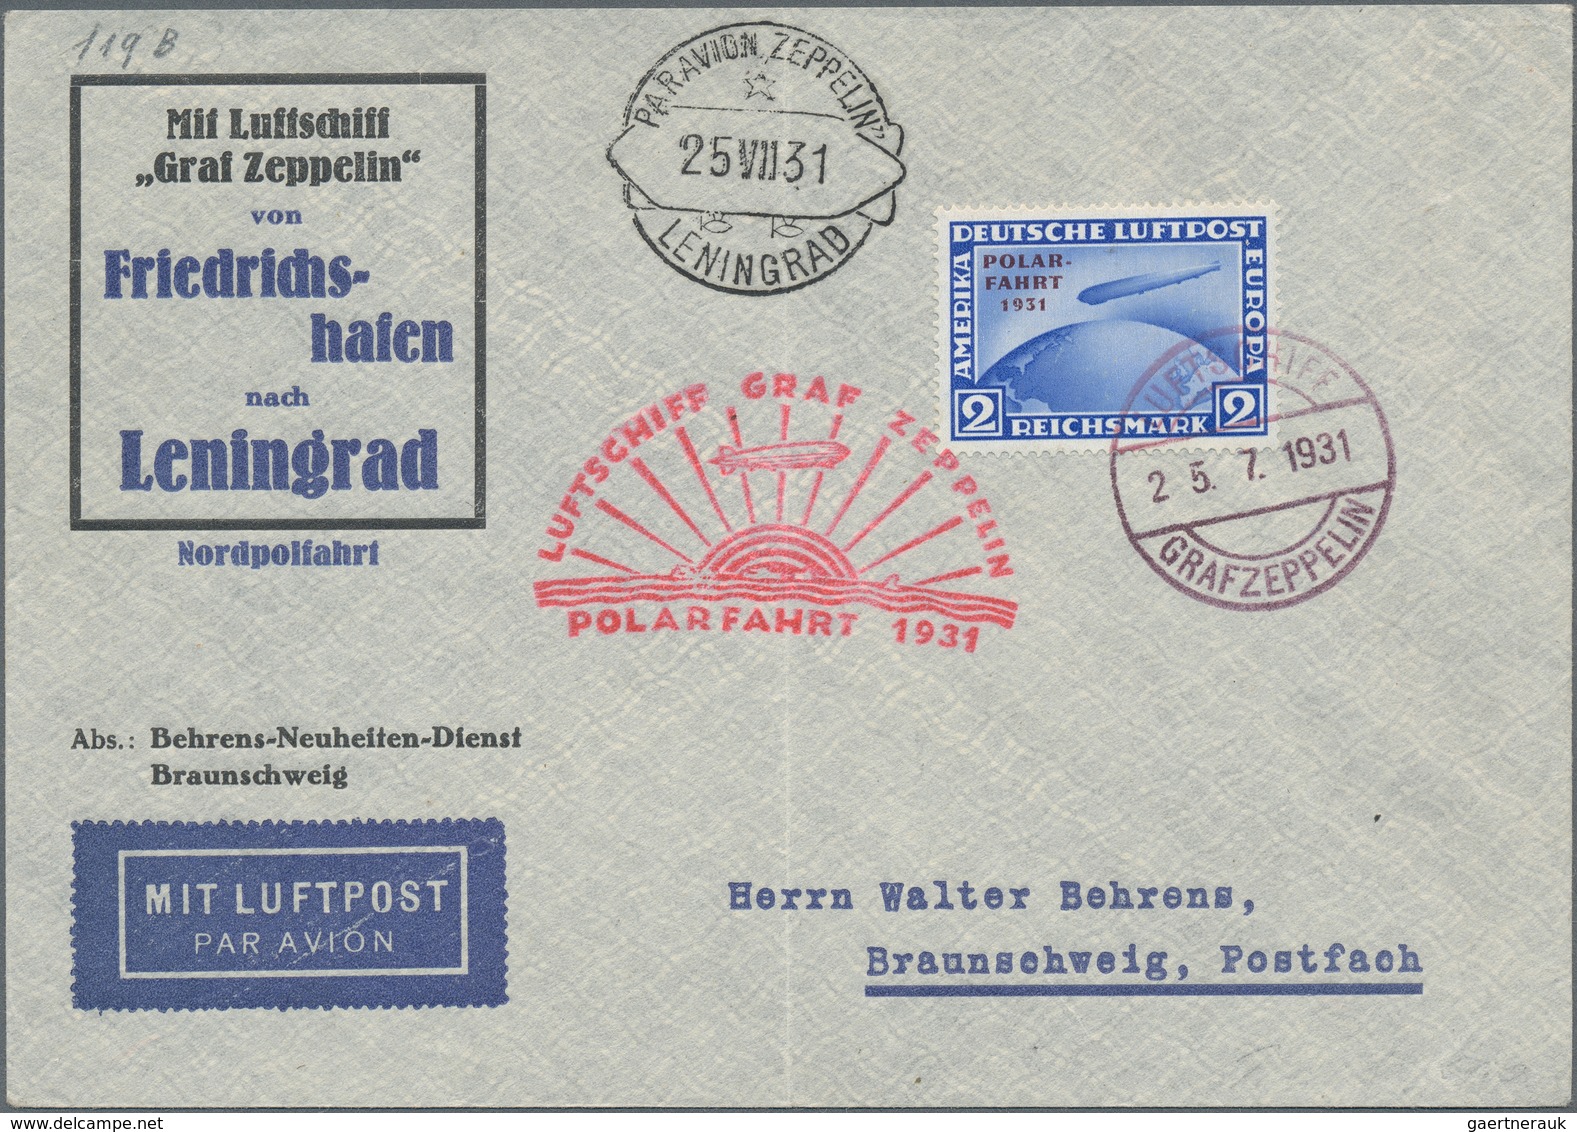 Nachlässe: 1850-1950 ca.: Rund 200 Briefe, Postkarten, Ganzsachen u.a. aus aller Welt, von frühen, u